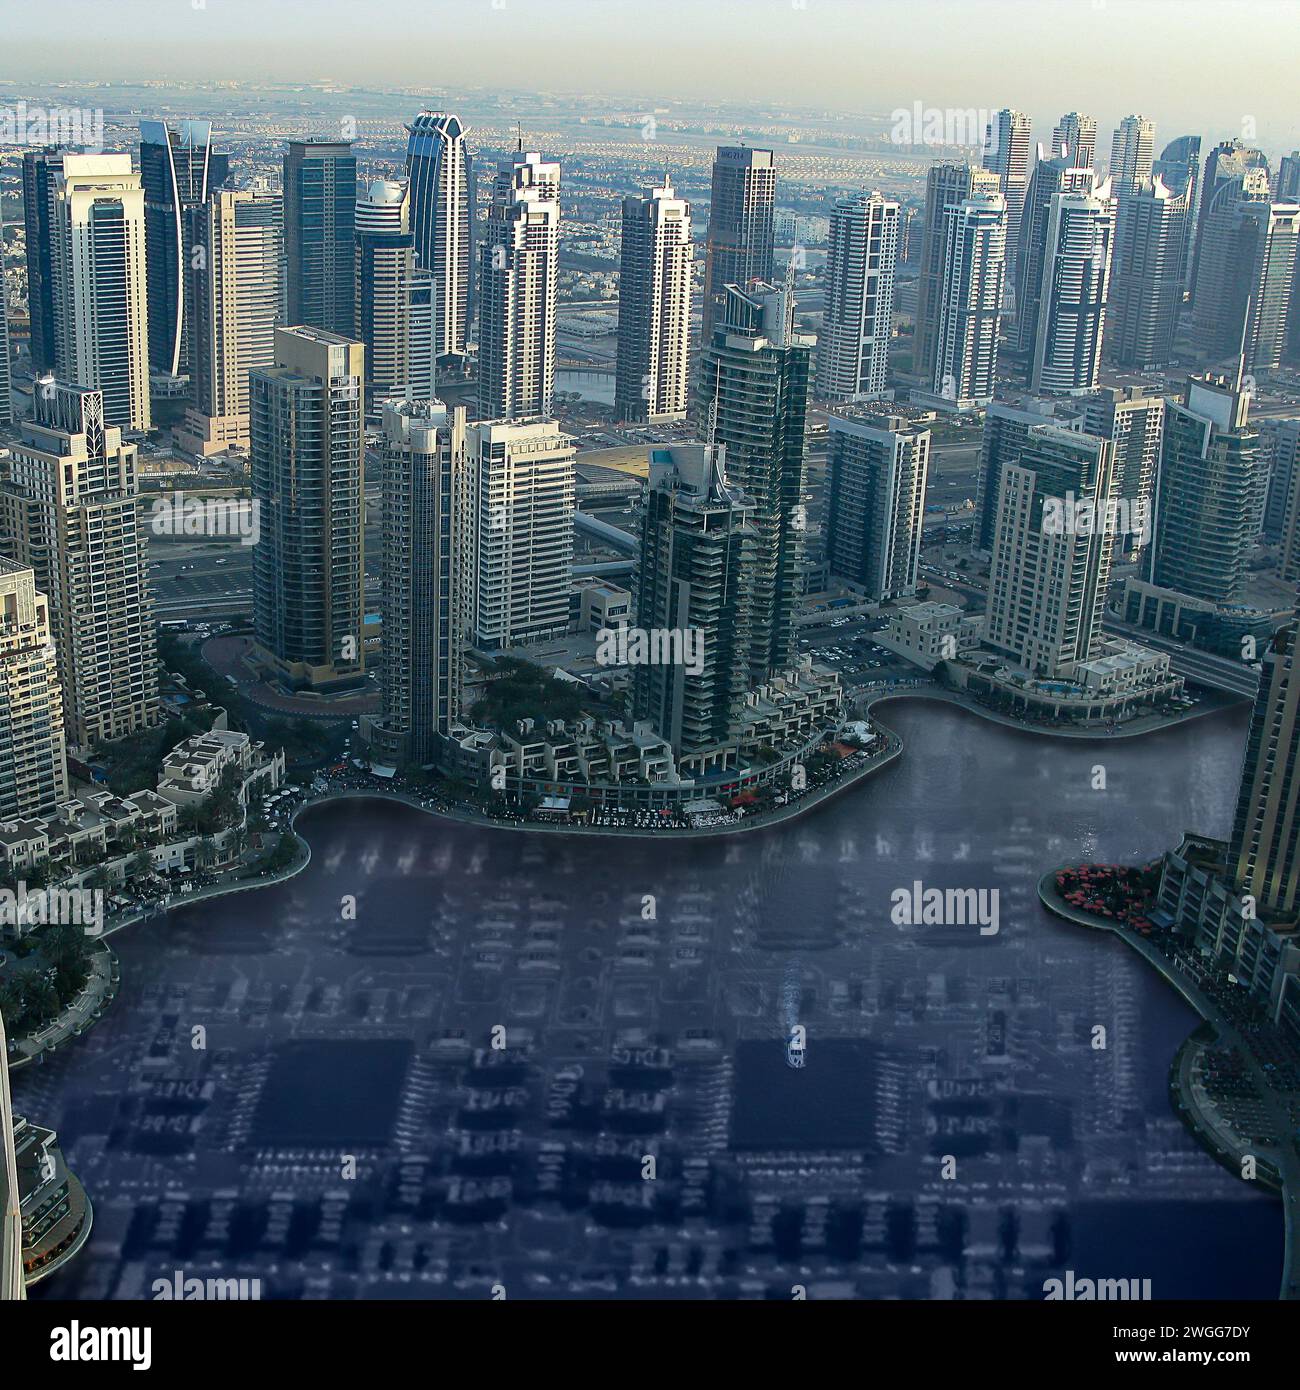 Moderne Stadt mit Wolkenkratzern, die auf einer elektronischen Platine mit IC, aktiven und passiven Komponenten stehen. Smart City-Konzept. Stockfoto